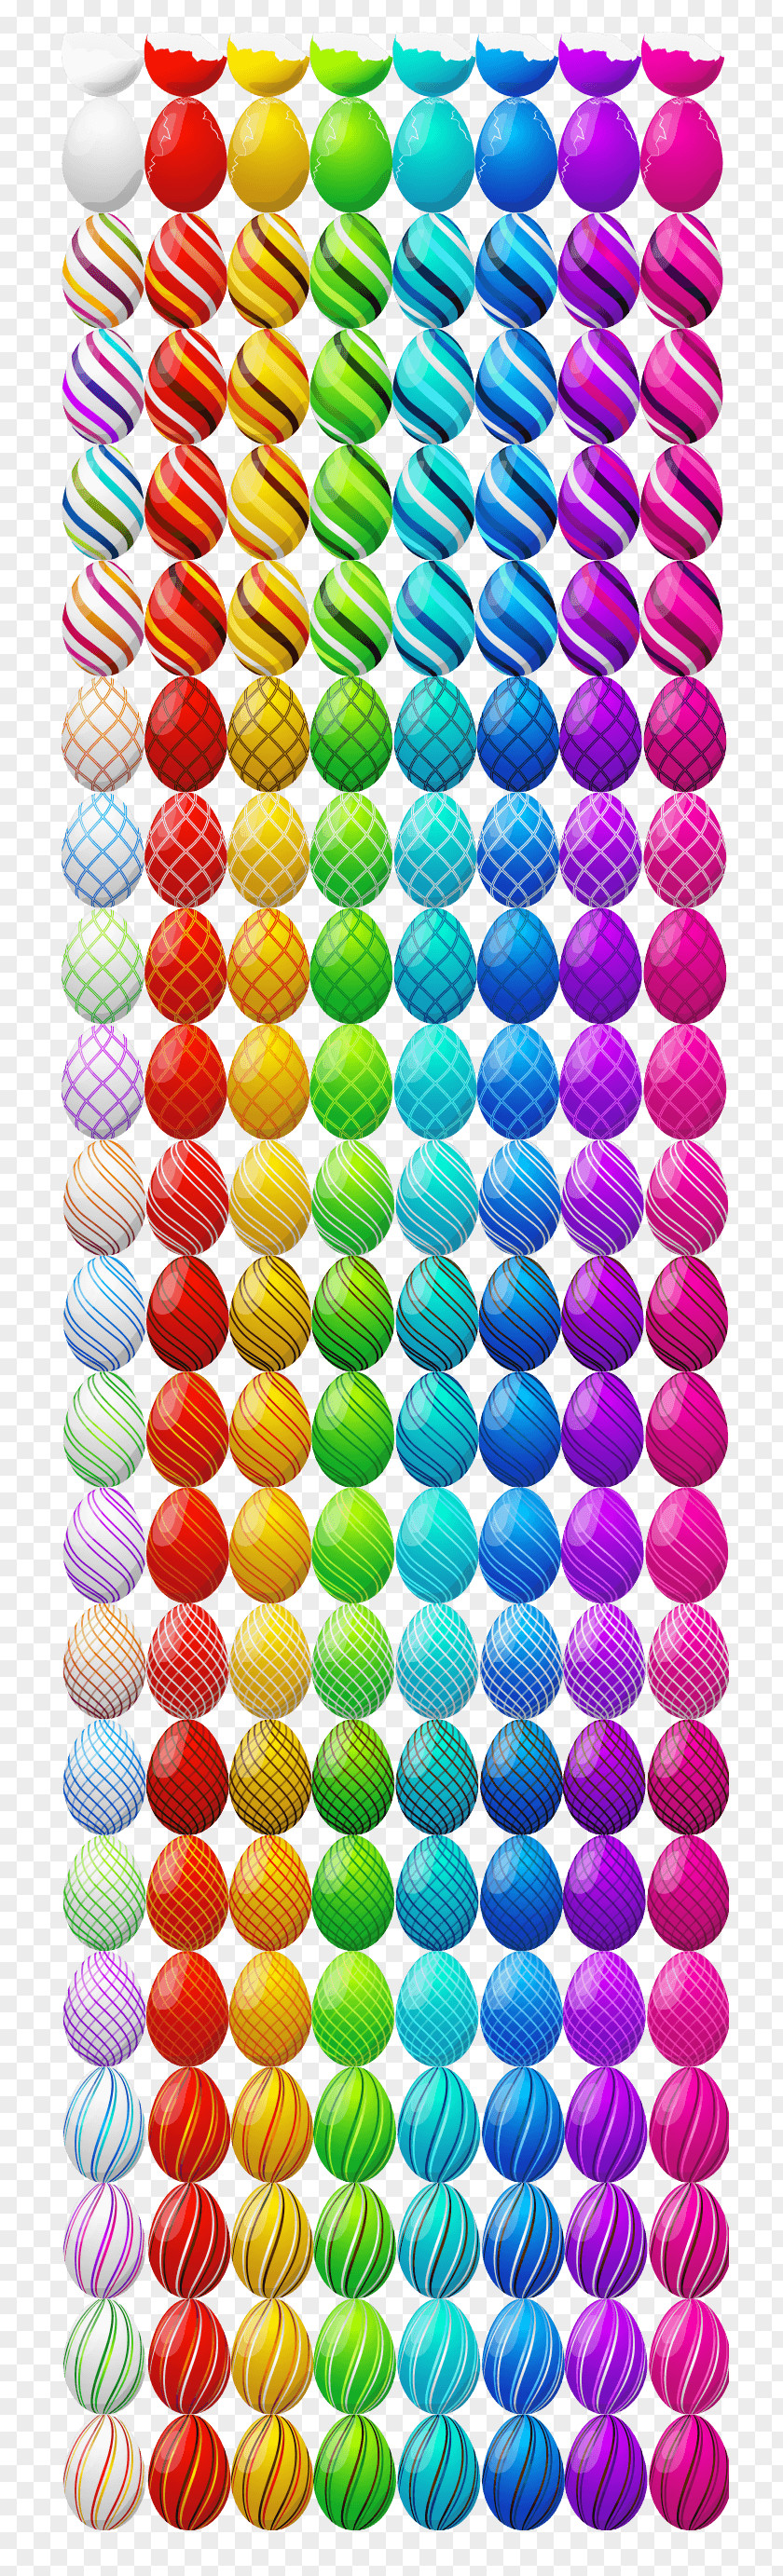 Easter Egg Digital Art Director PNG